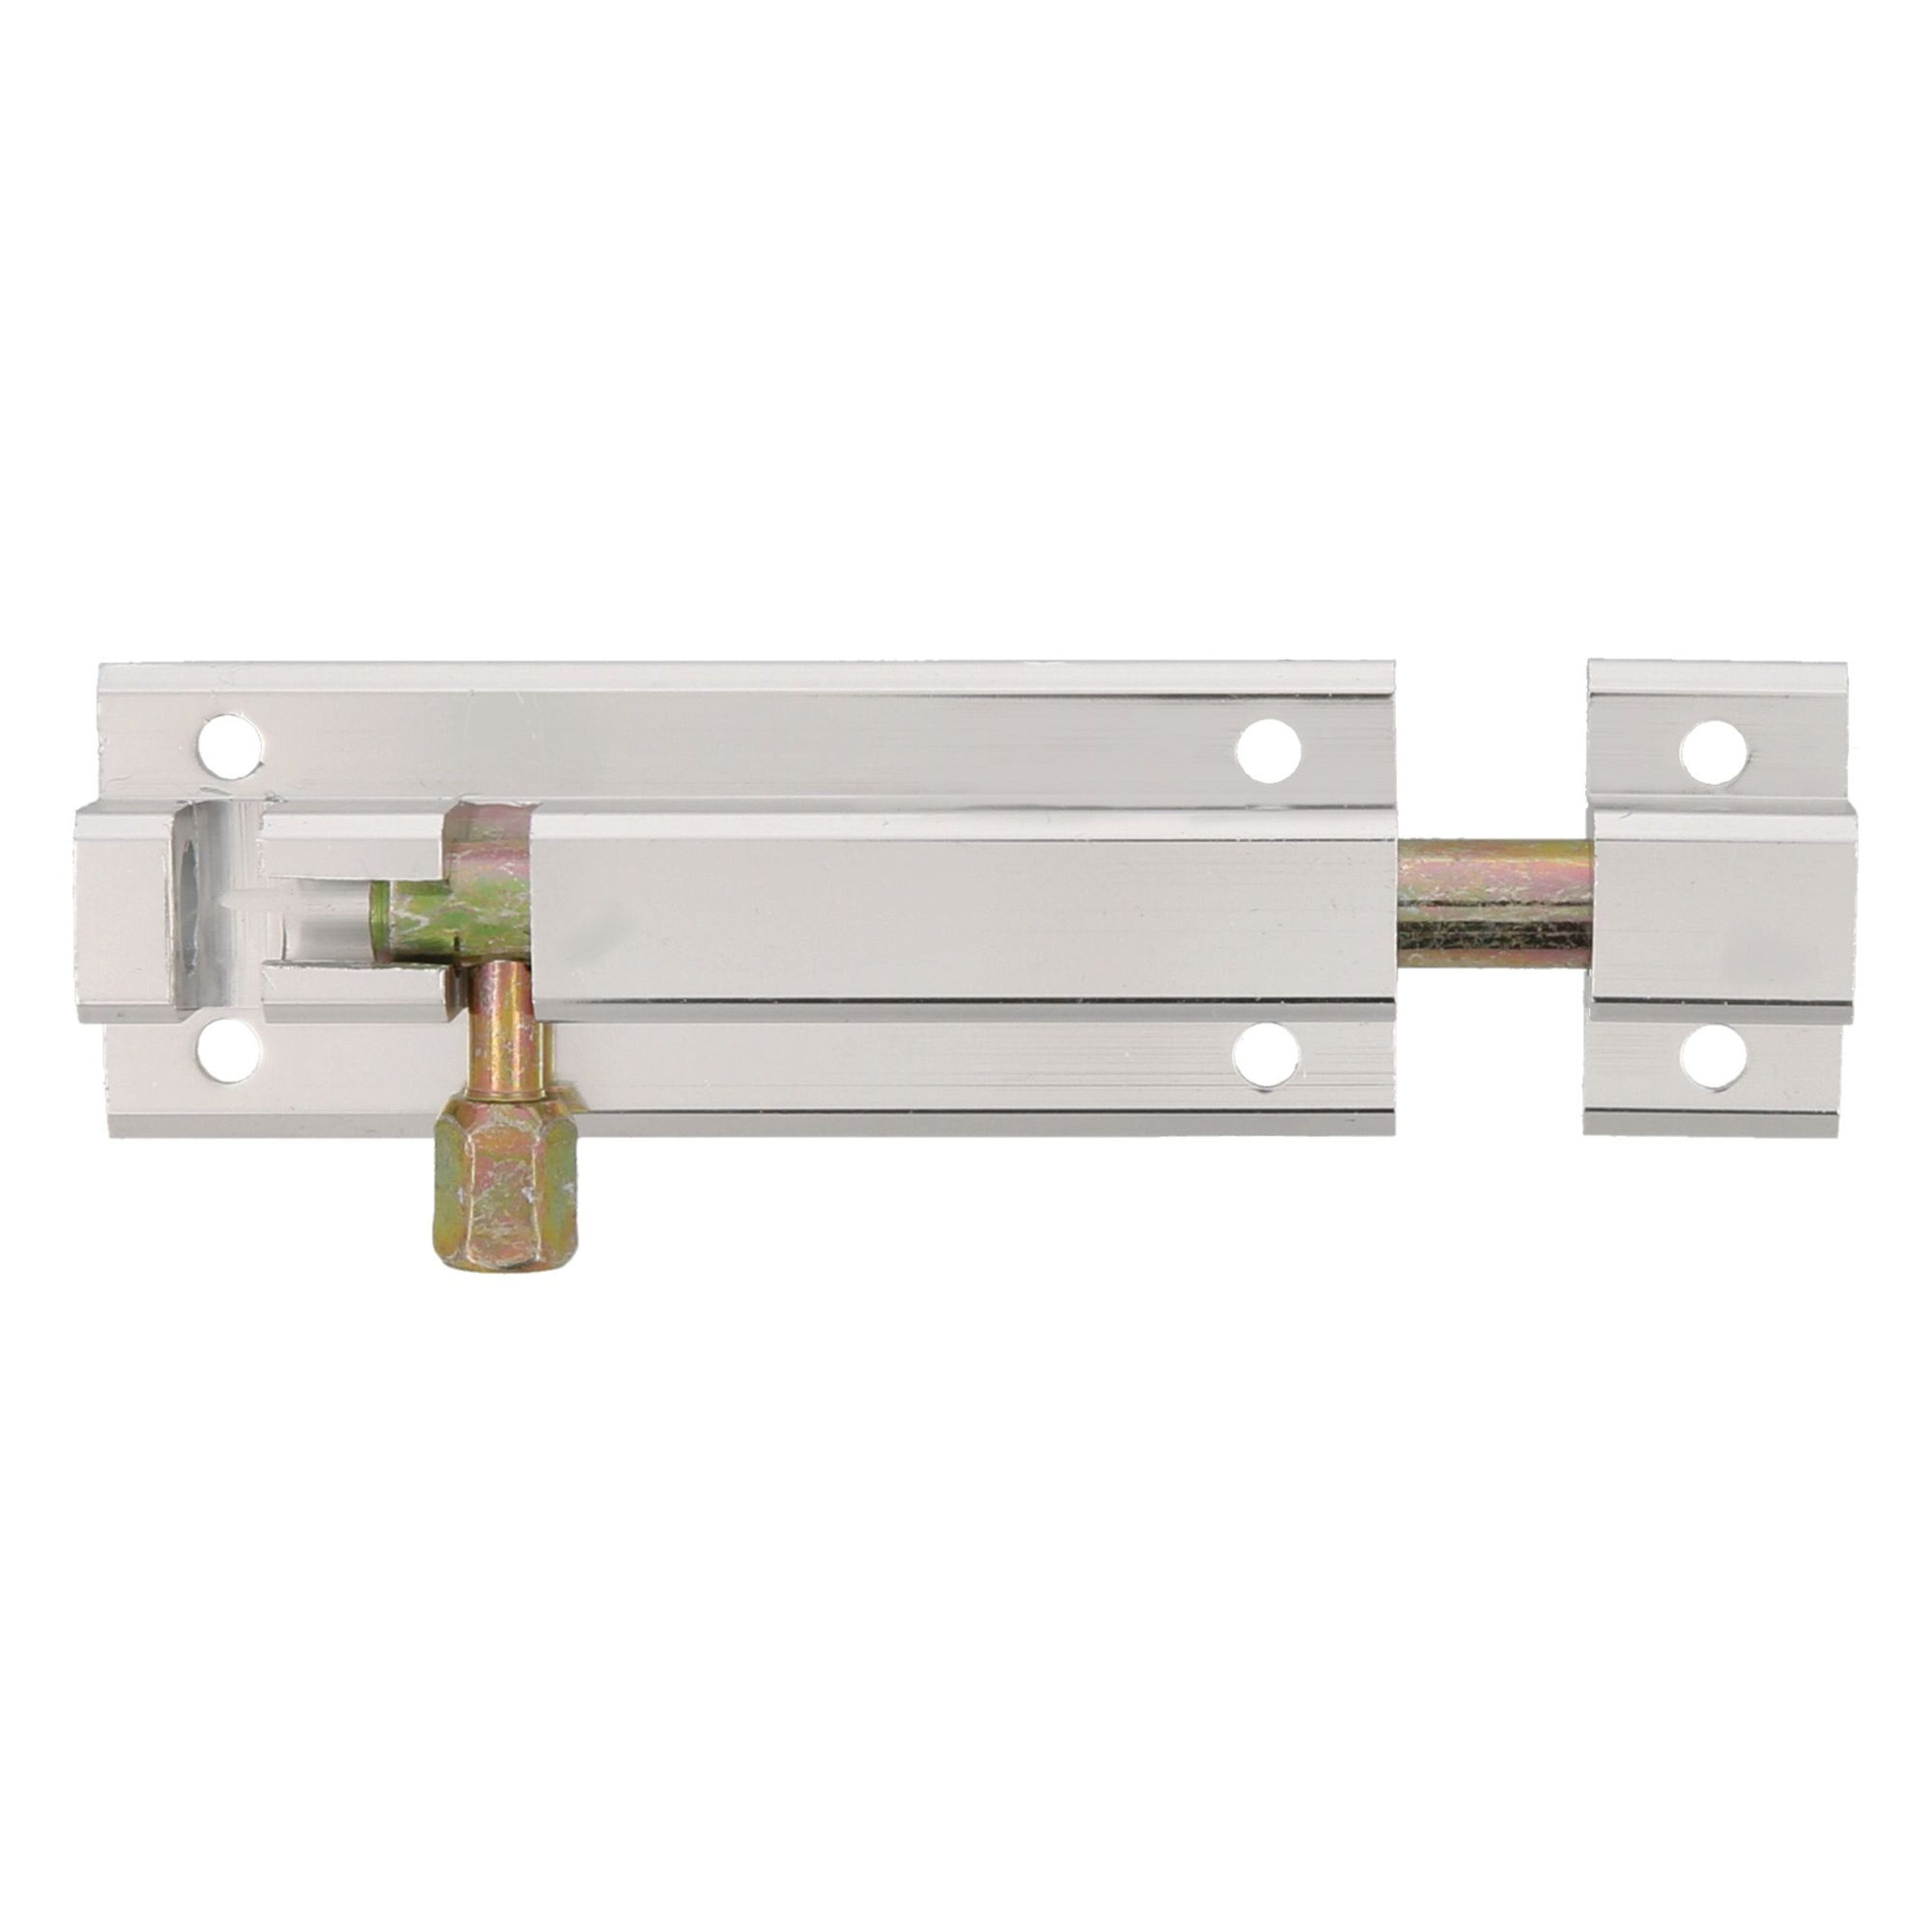 AMIG schuifslot-plaatgrendel aluminium 5 cm zilver deur schutting raam slot